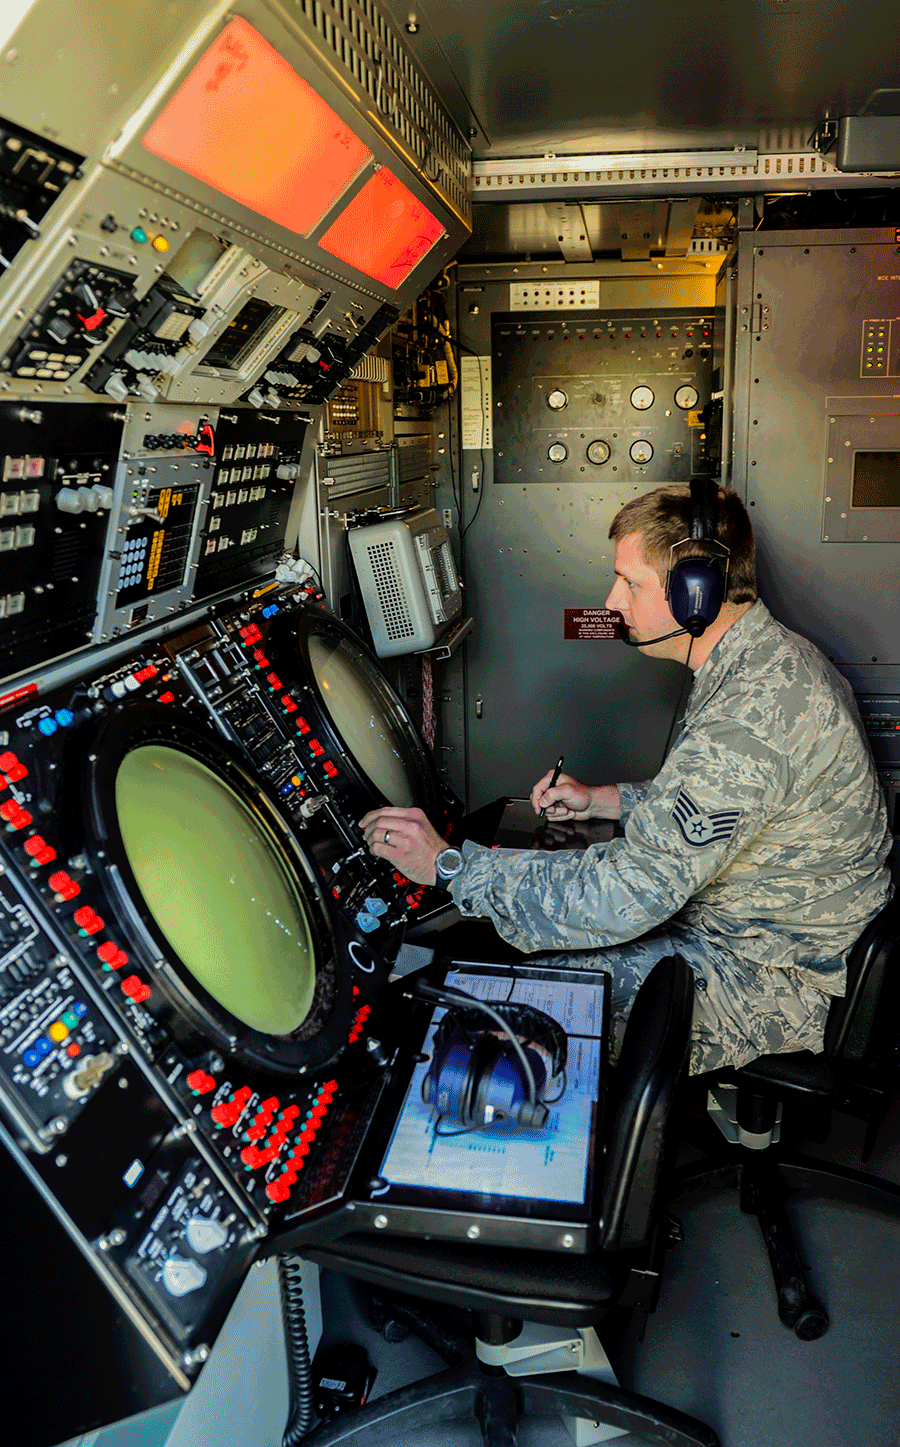 Airman looking at screens inside aircraft.